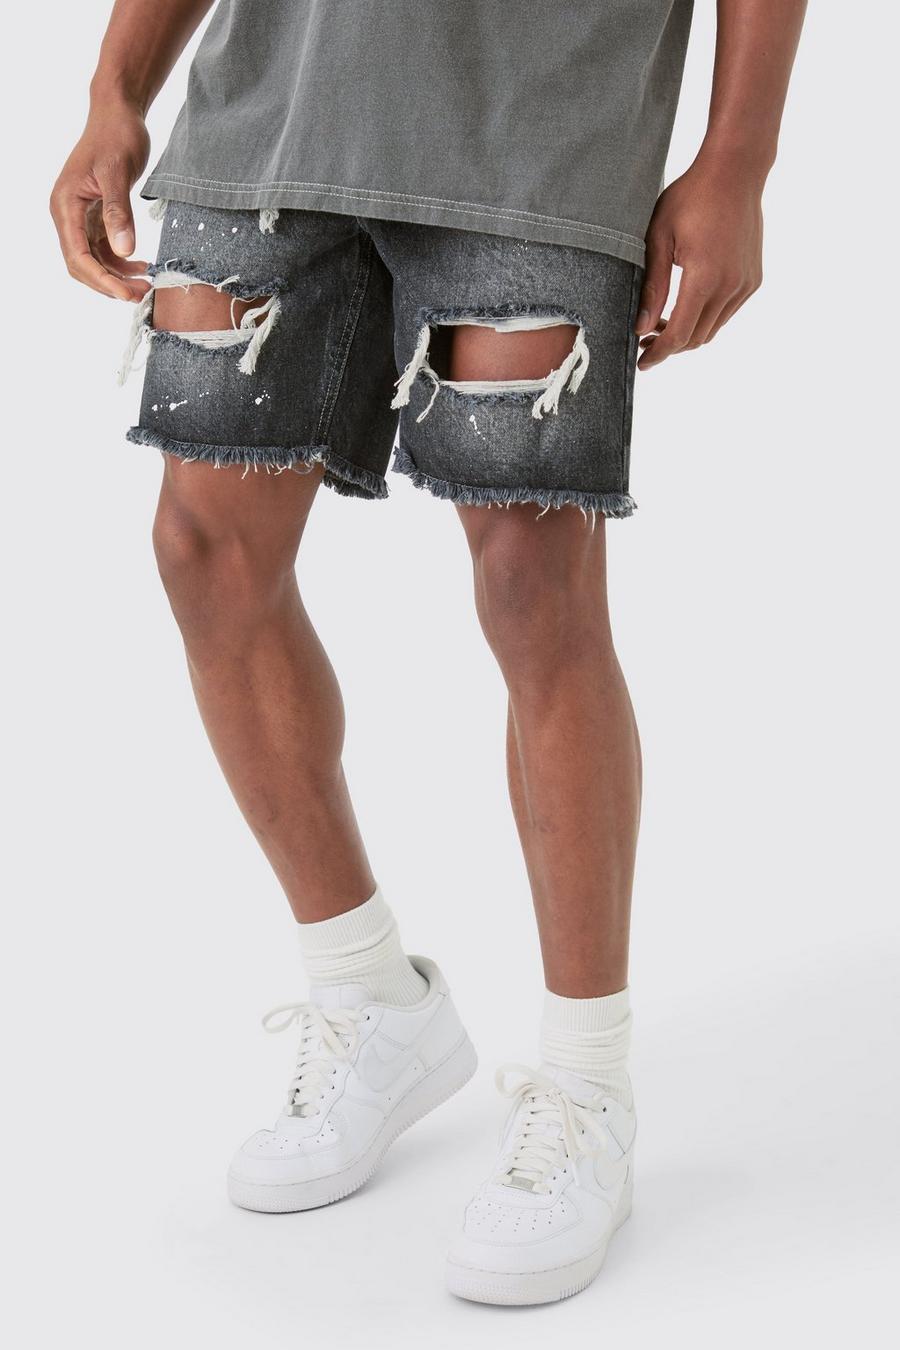 Pantalones cortos vaqueros ajustados sin tratar rotos con salpicaduras de pintura en gris, Grey image number 1